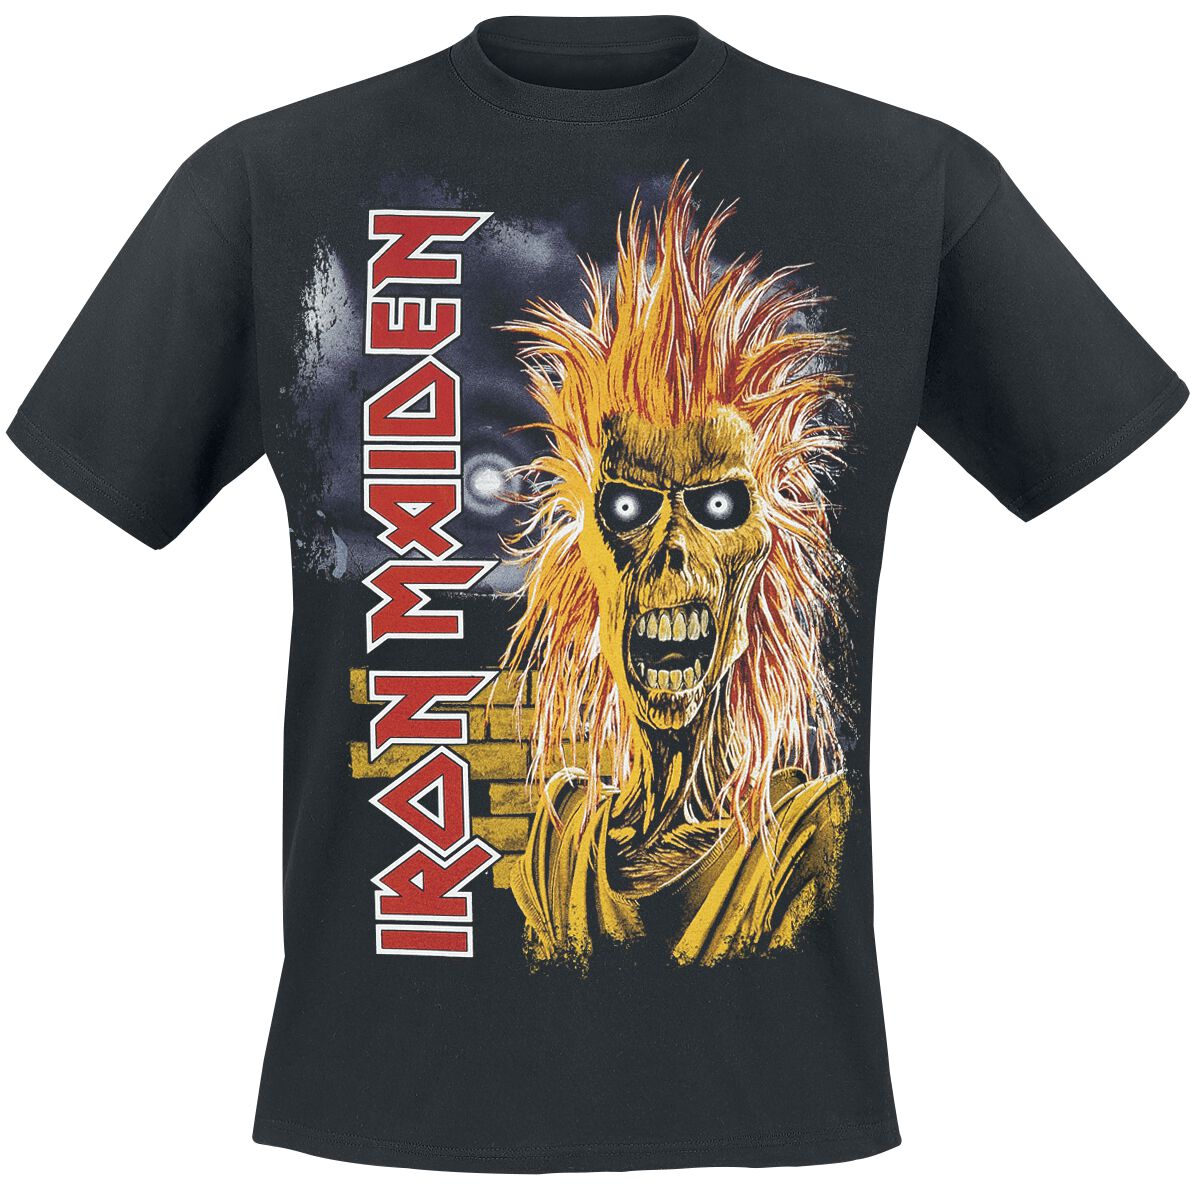 Iron Maiden 1st Album Tracklist T-Shirt schwarz in 4XL